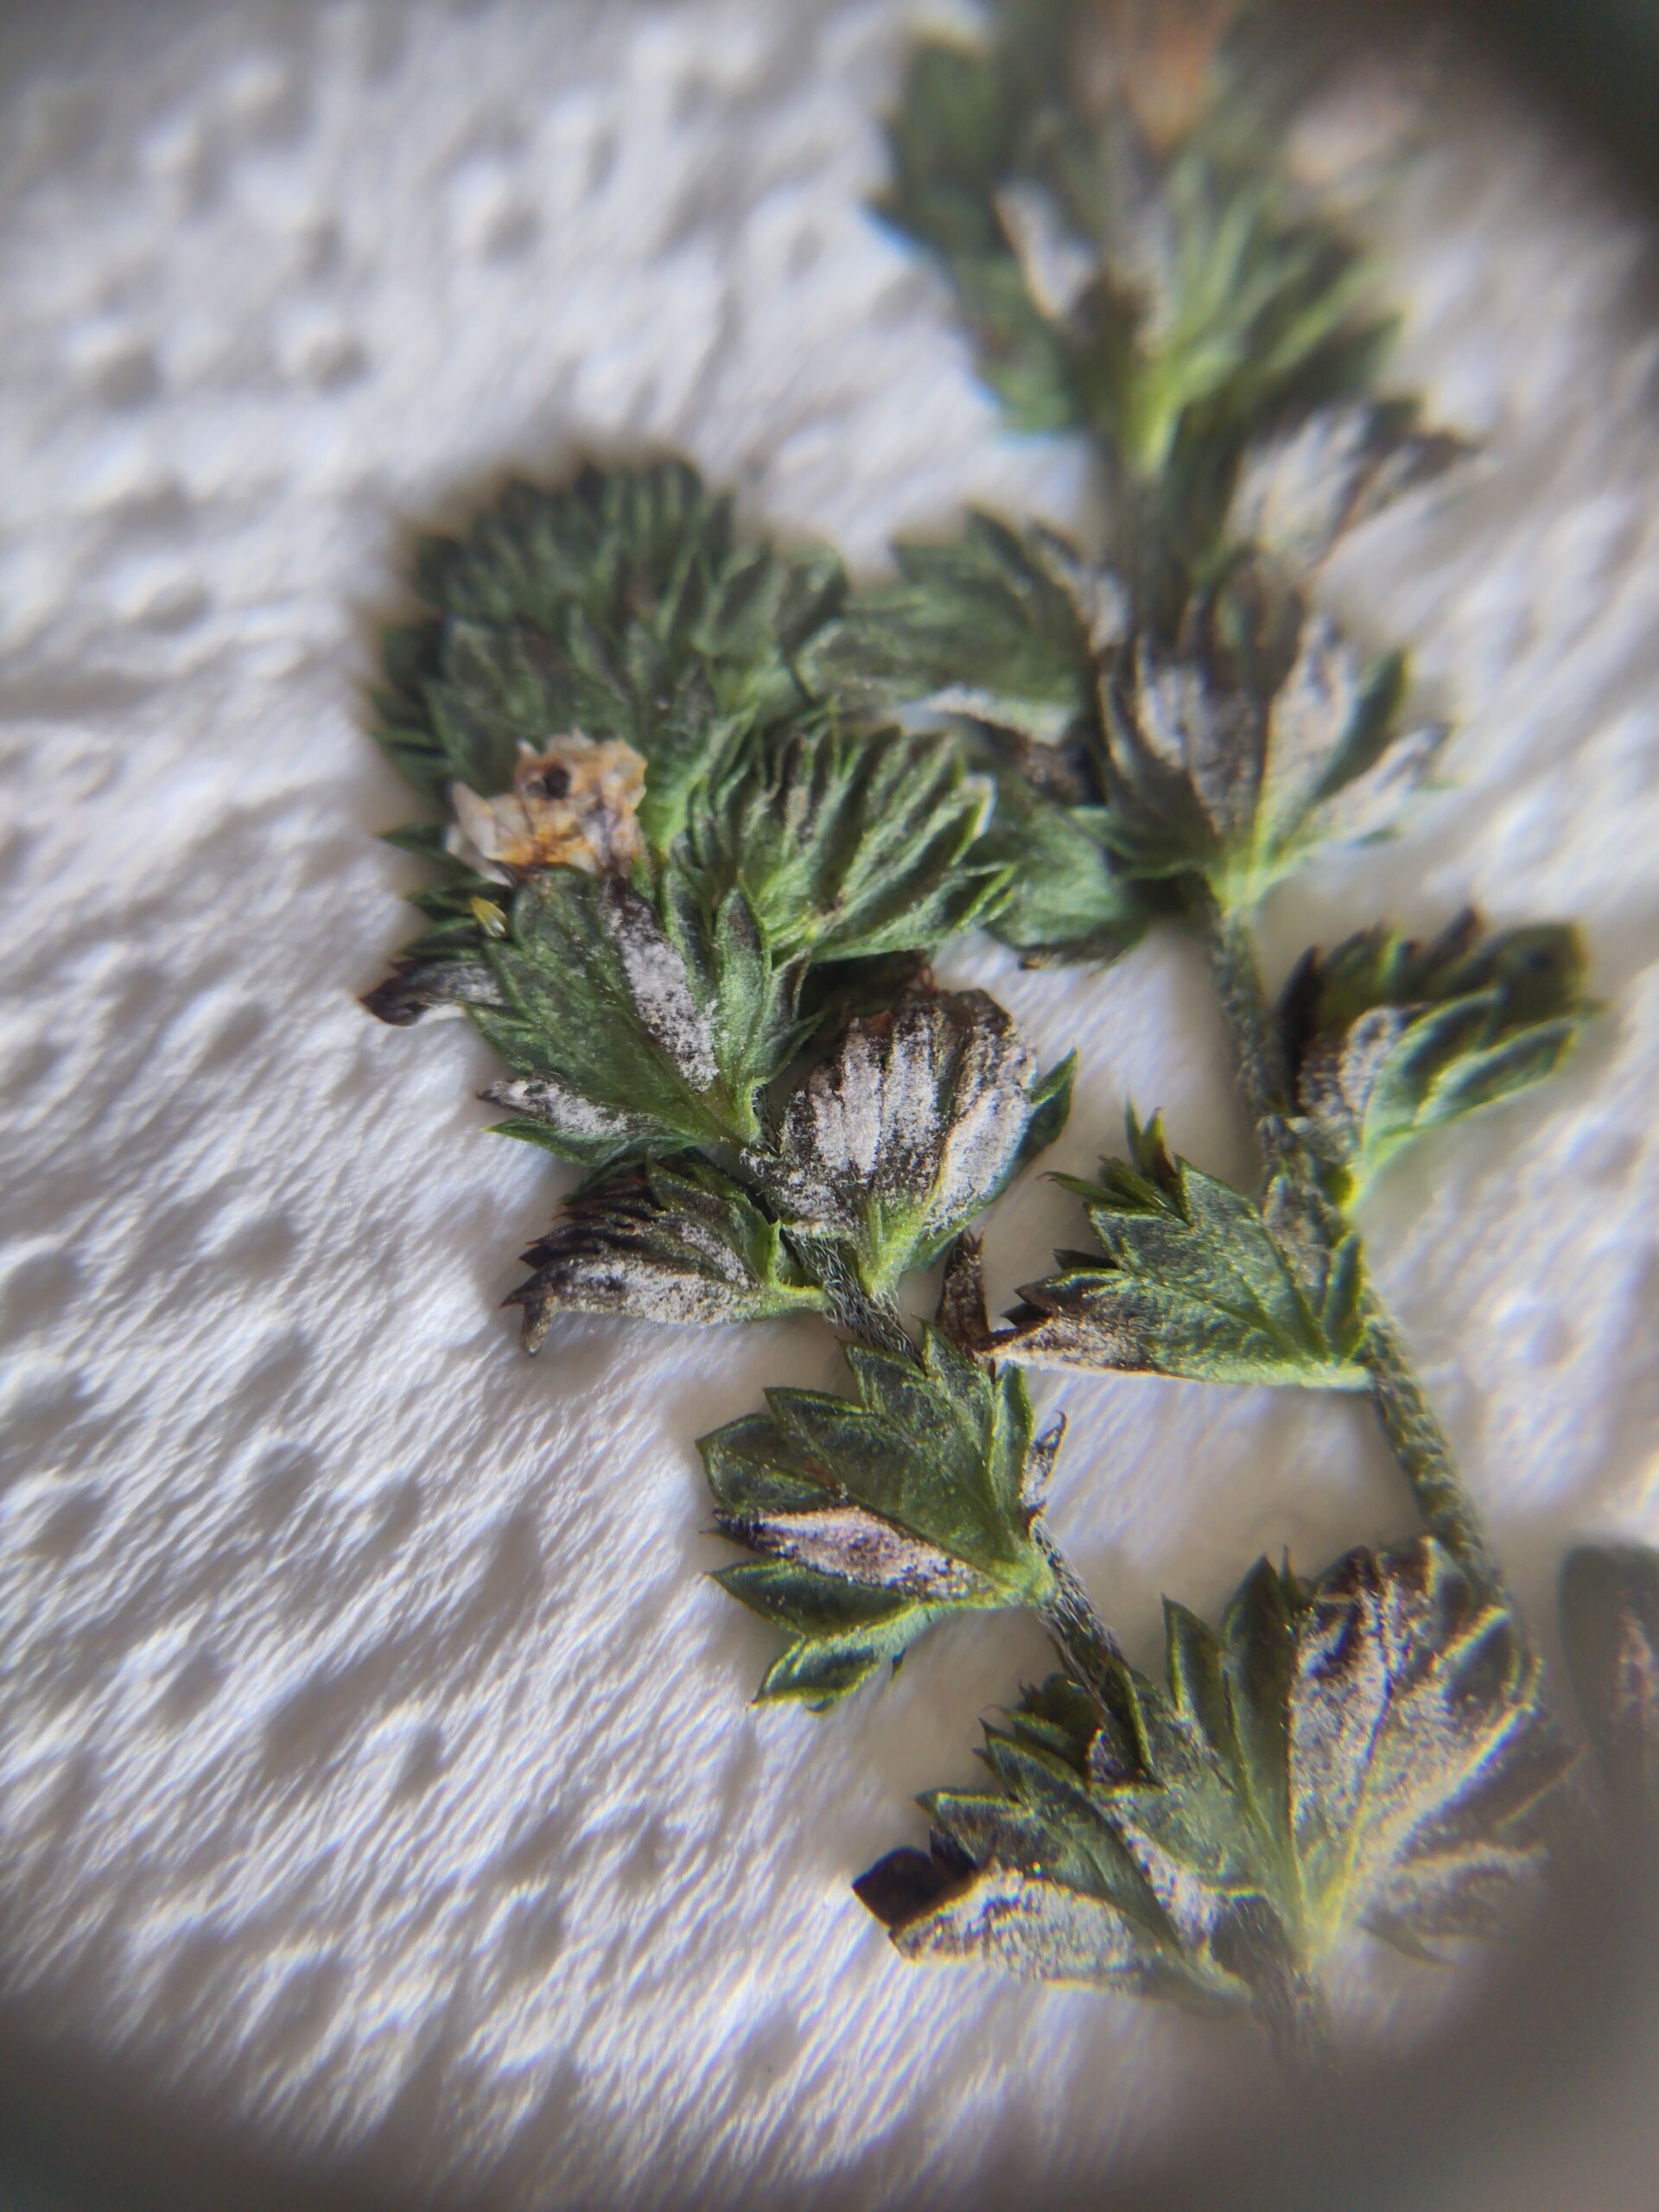 Plasmopara euphrasiae: a downy mildew species new to Ireland